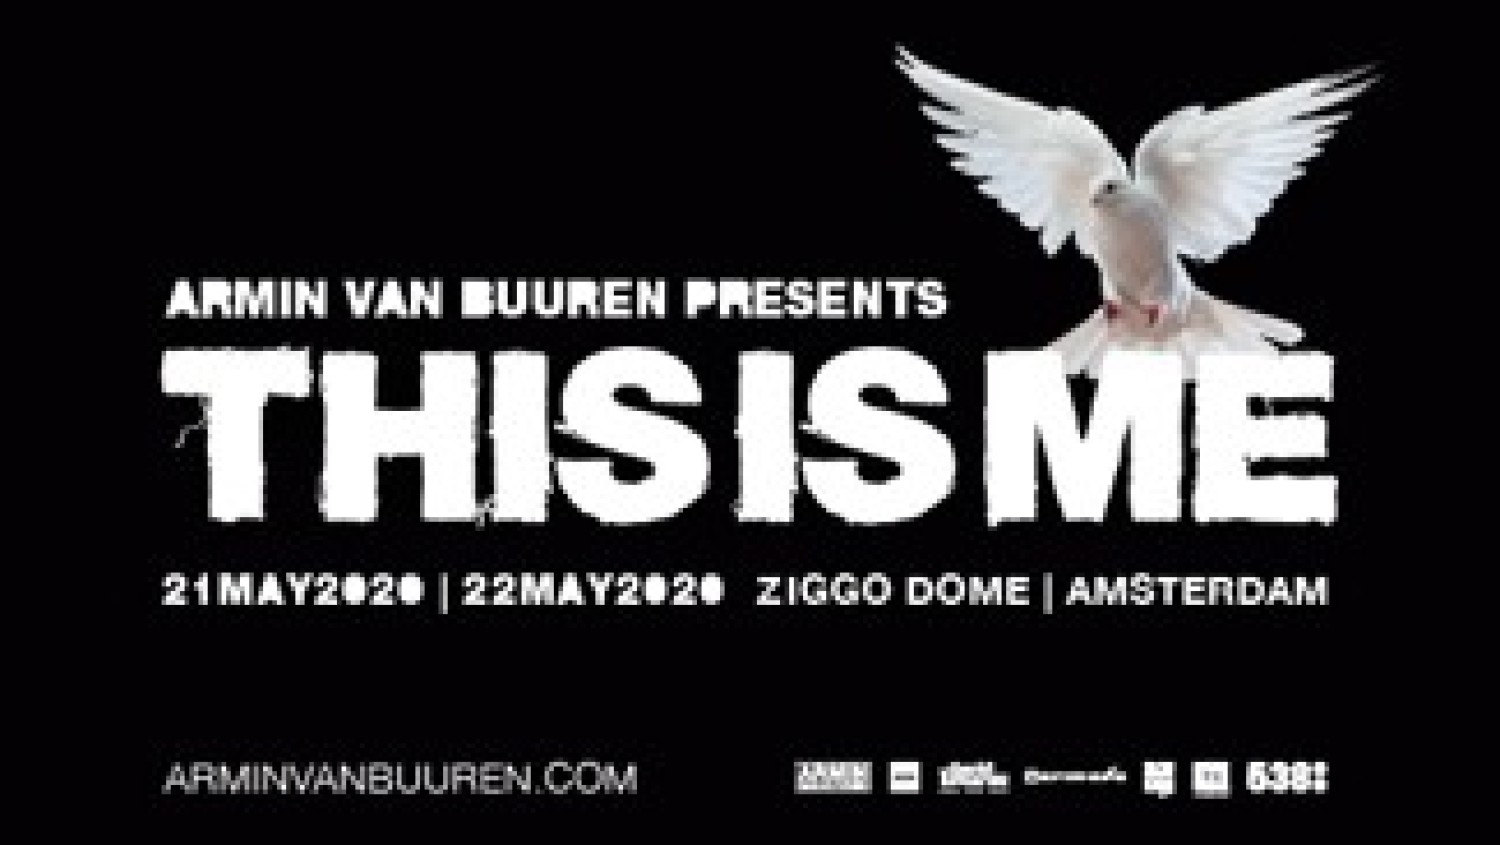 Party nieuws: Armin van Buuren komt met meest persoonlijke show ooit